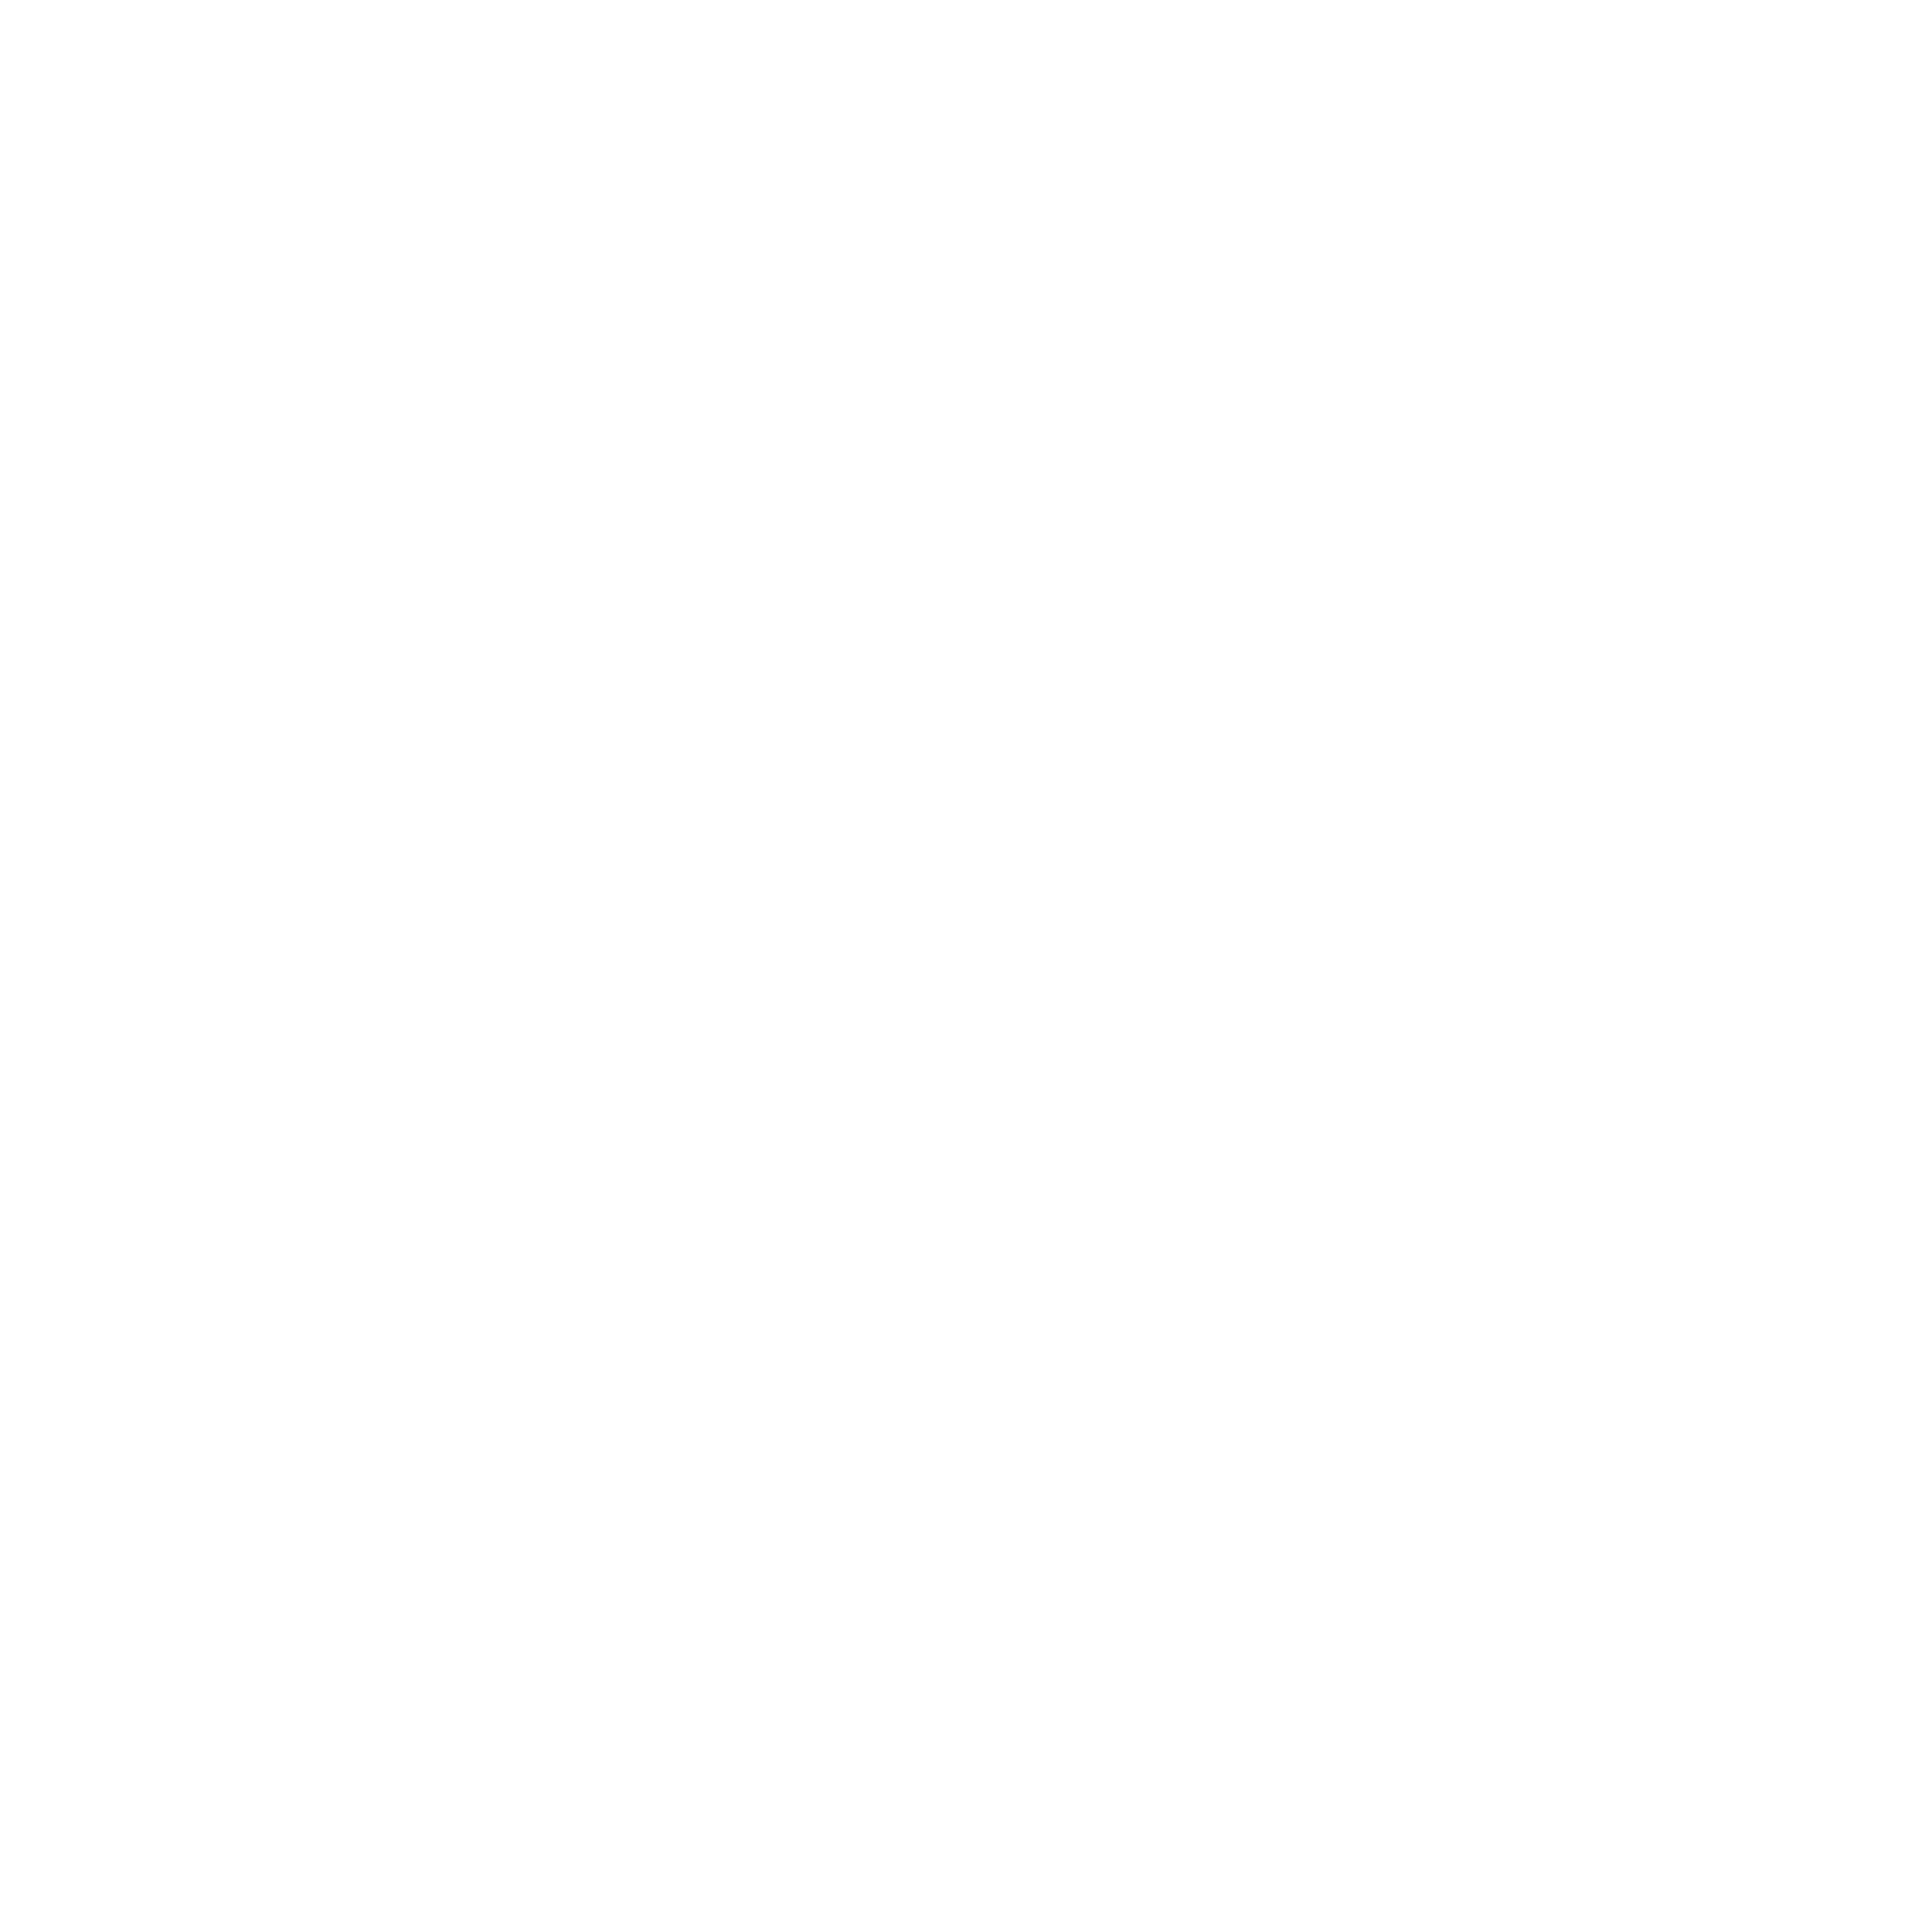 Светильник алюминиевый Flexy SVET 30: размер, вид, применение, способ монтажа в Москве, СПБ и России